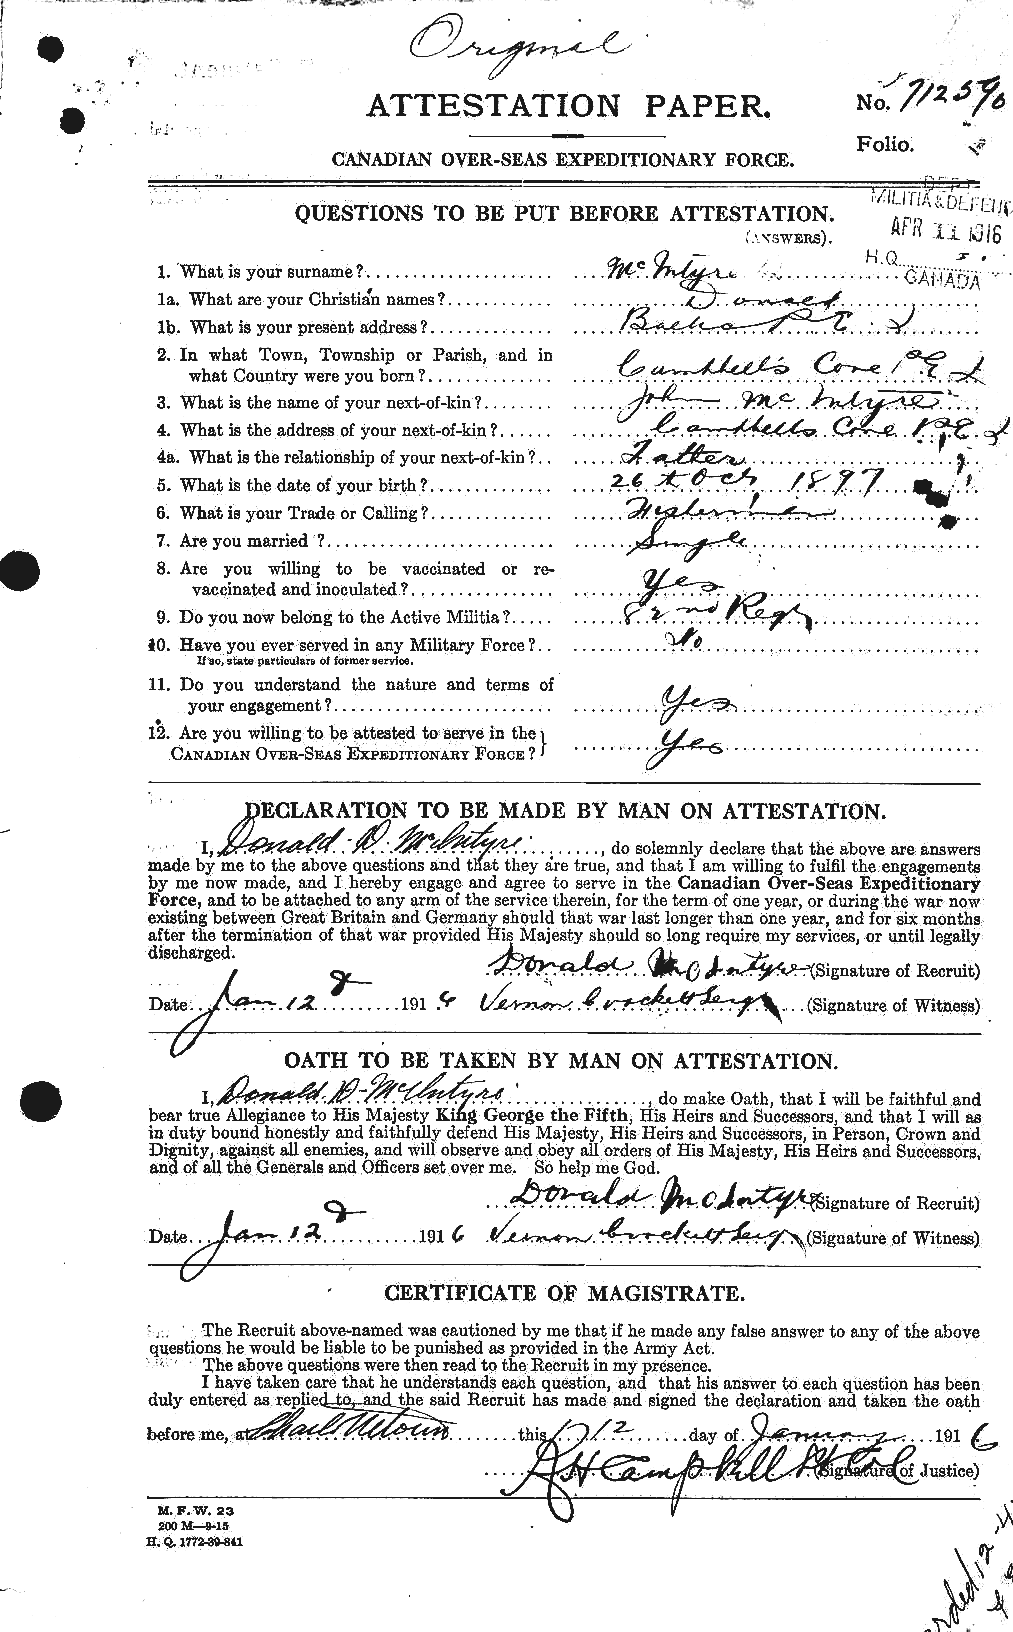 Dossiers du Personnel de la Première Guerre mondiale - CEC 527319a